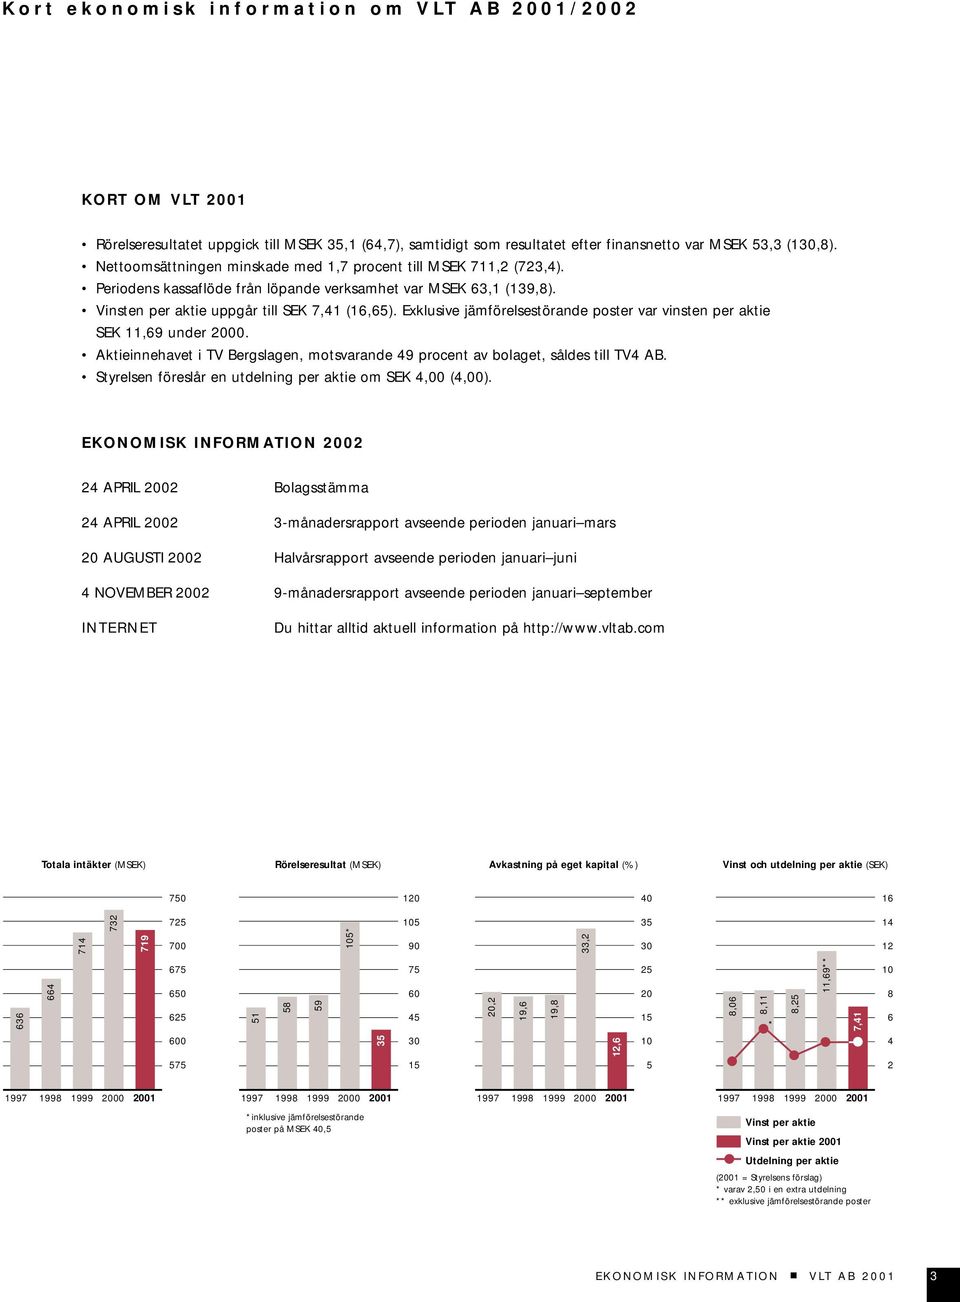 Exklusive jämförelsestörande poster var vinsten per aktie SEK 11,69 under 2000. Aktieinnehavet i TV Bergslagen, motsvarande 49 procent av bolaget, såldes till TV4 AB.